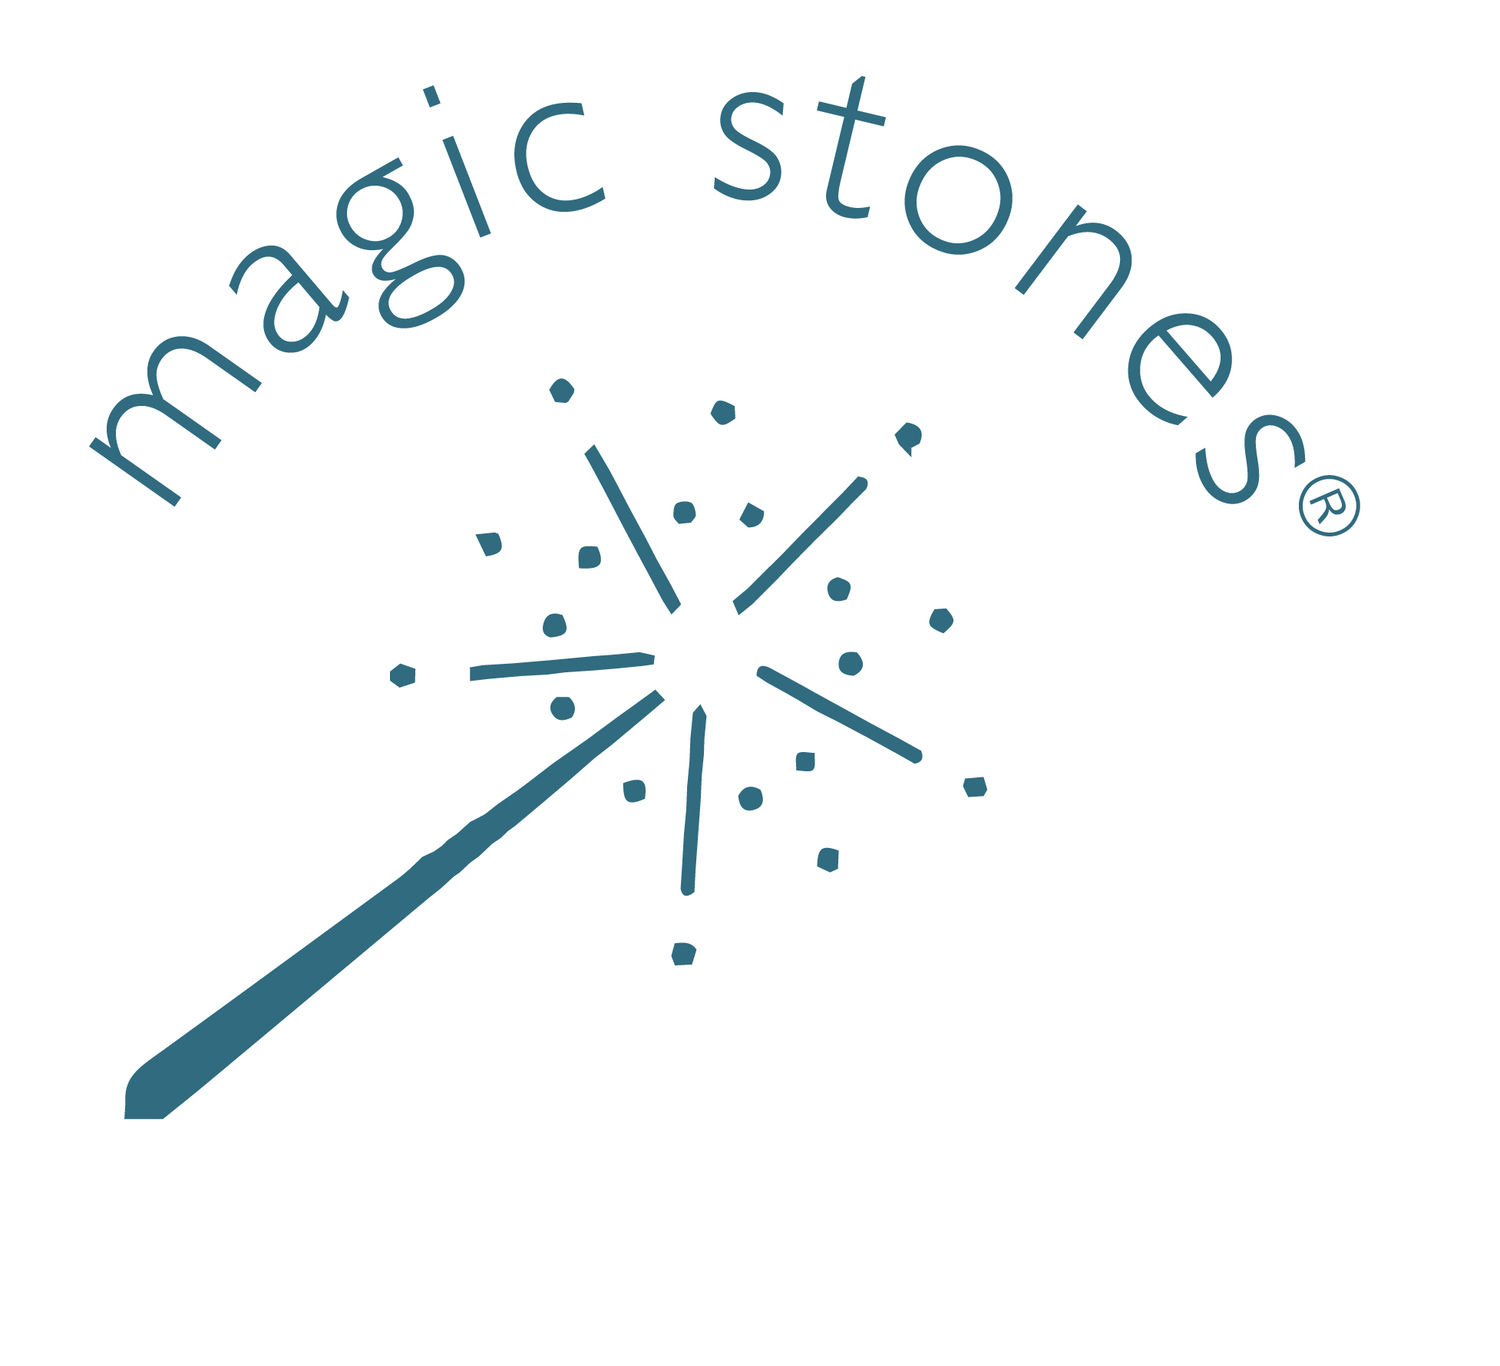 Magic Stones